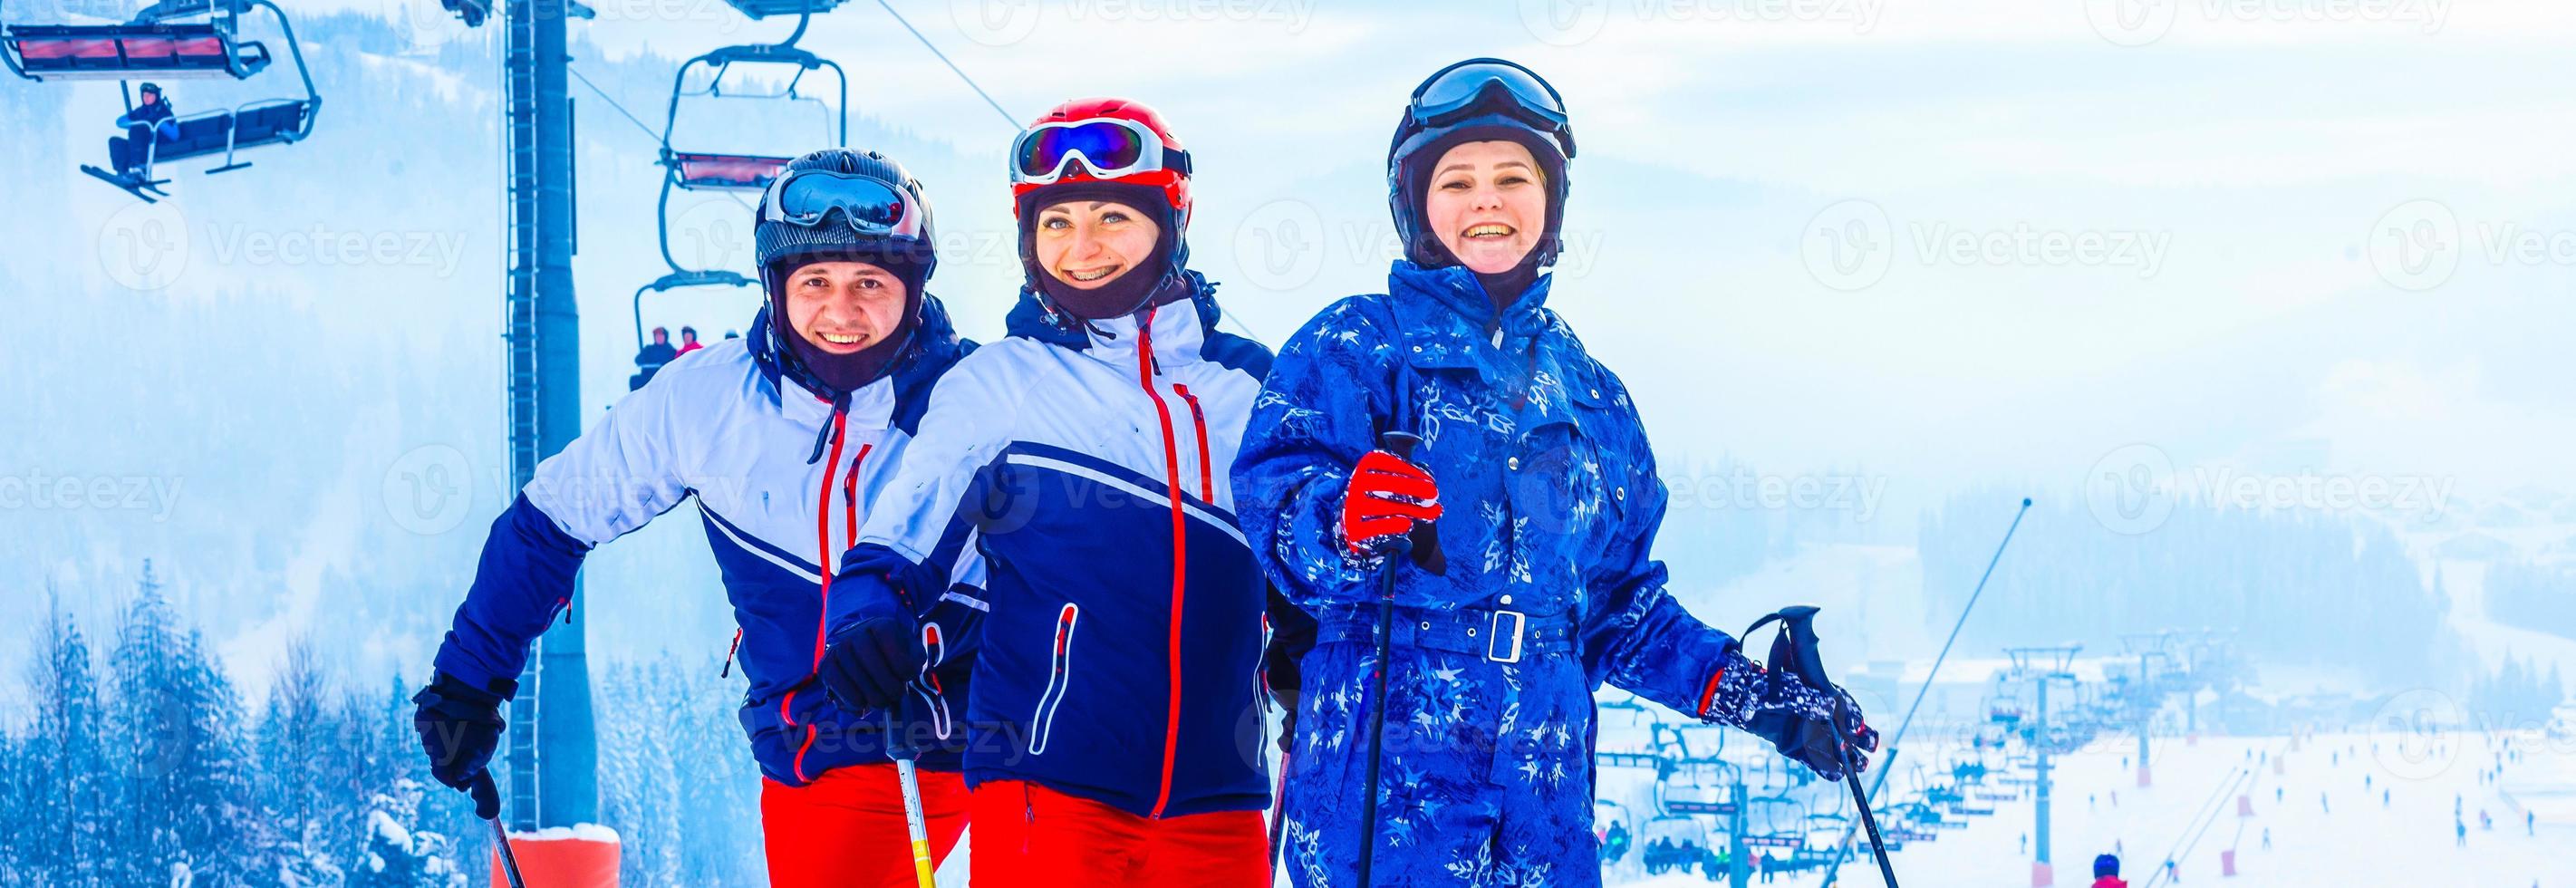 groupe d'amis avec marche à ski dans une station de ski photo